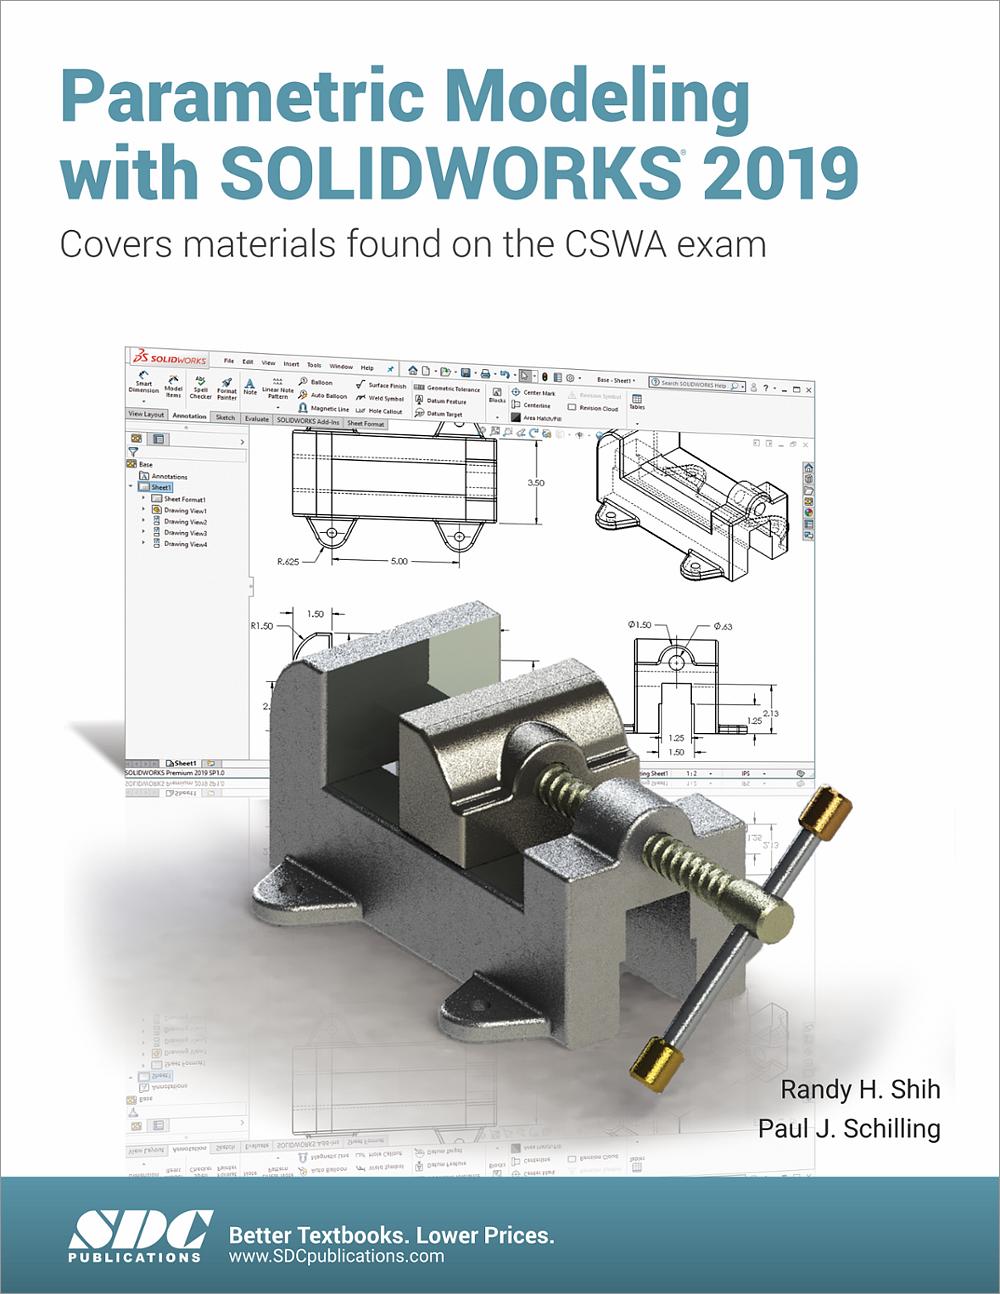 solidworks essentials book download